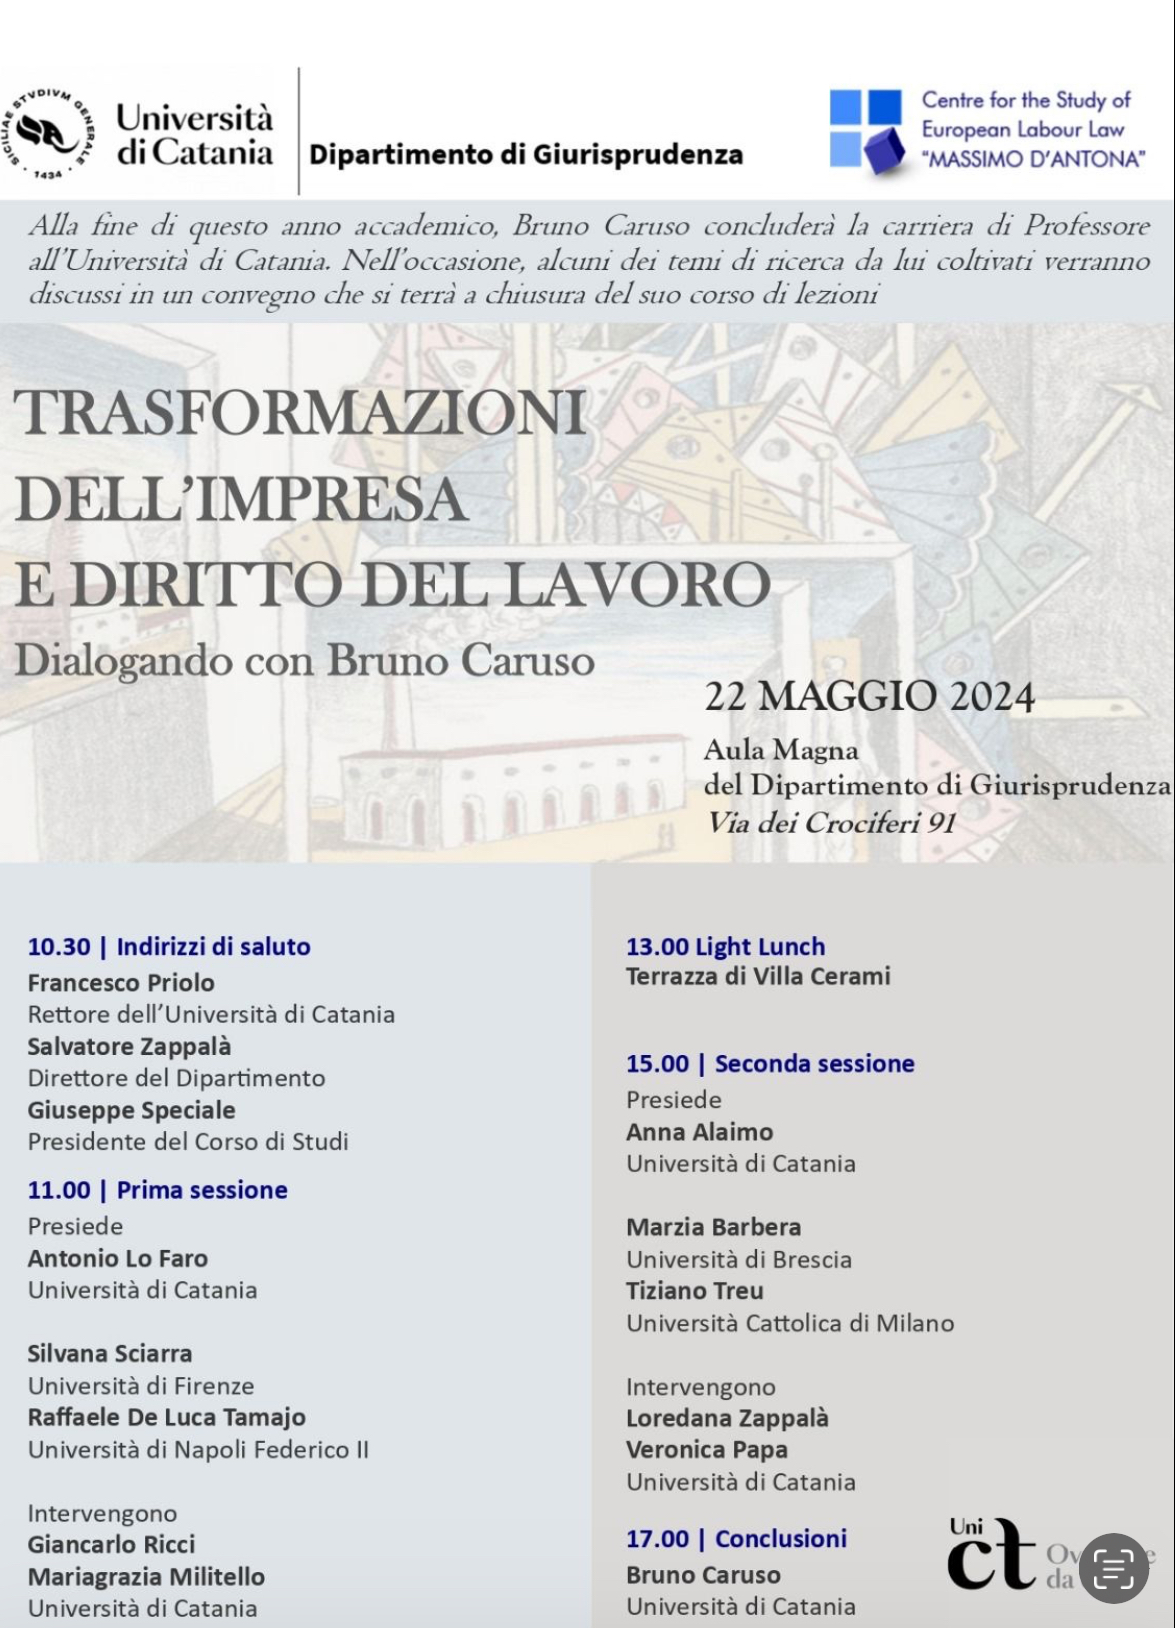 TRASFORMAZIONI DELL'IMPRESA E DIRITTO DEL LAVORO Dialogando con Bruno Caruso - Il prossimo 22 maggio